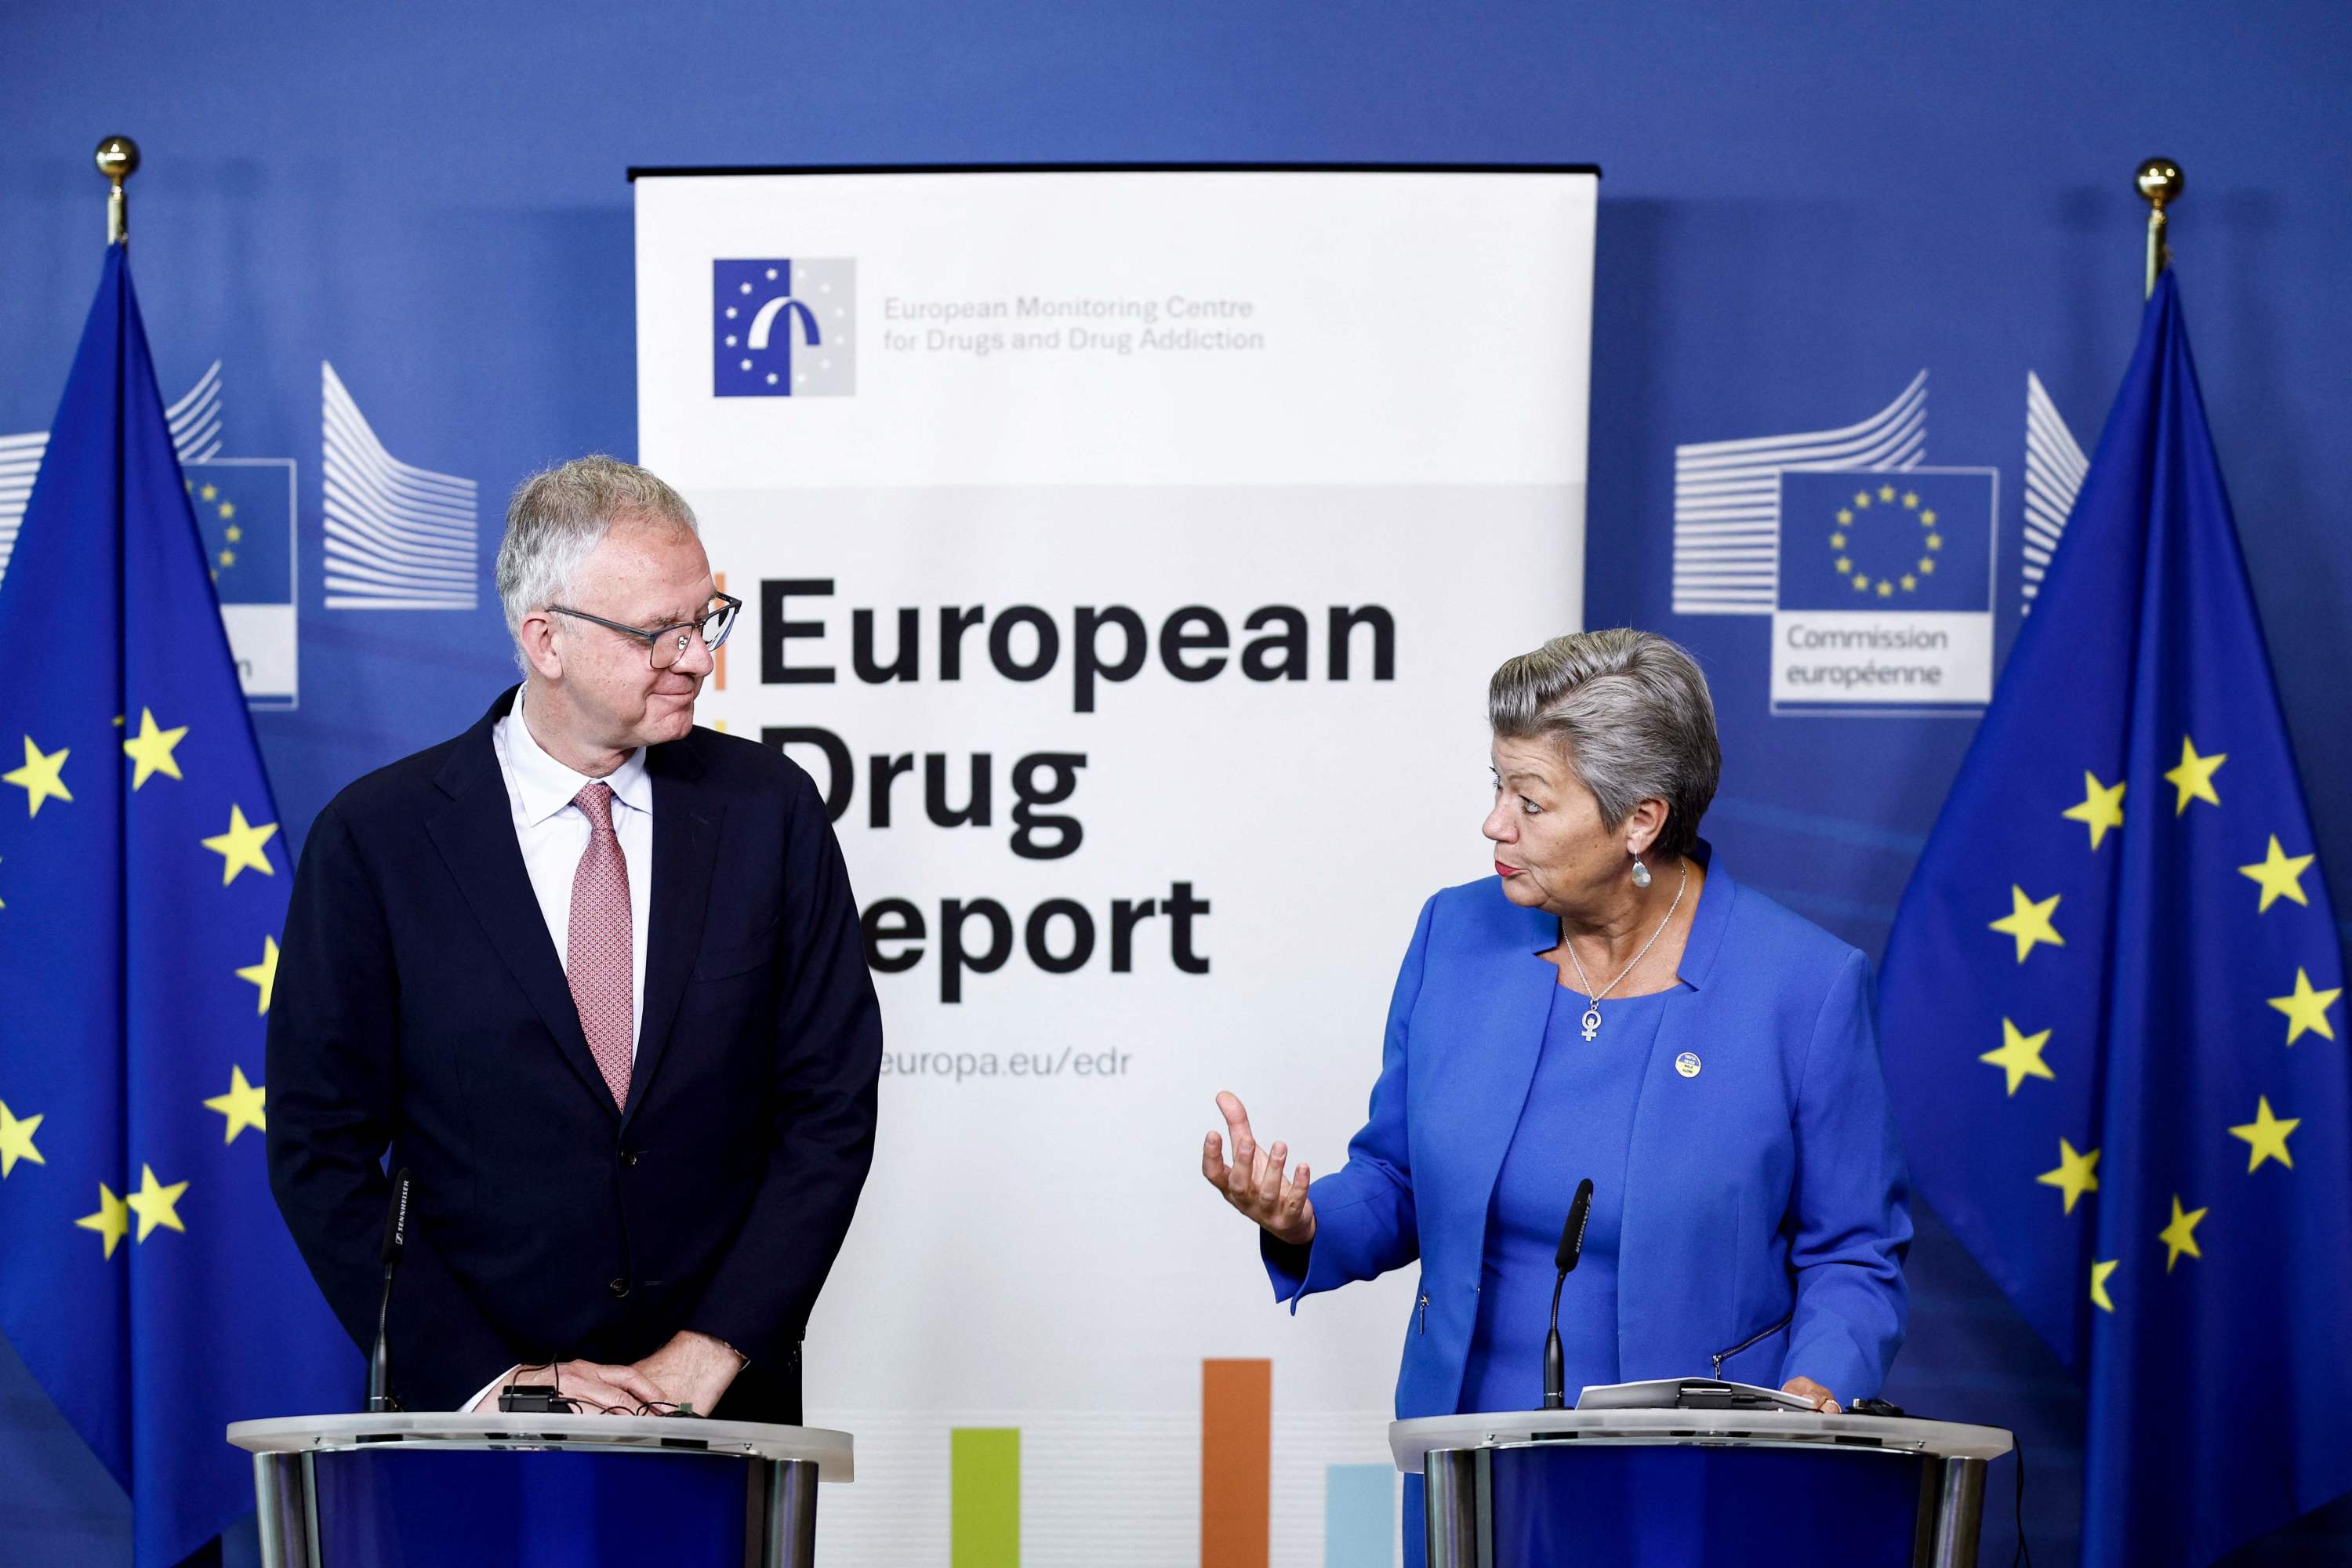 Découverte des plus anciens indices de prises de drogue en Europe